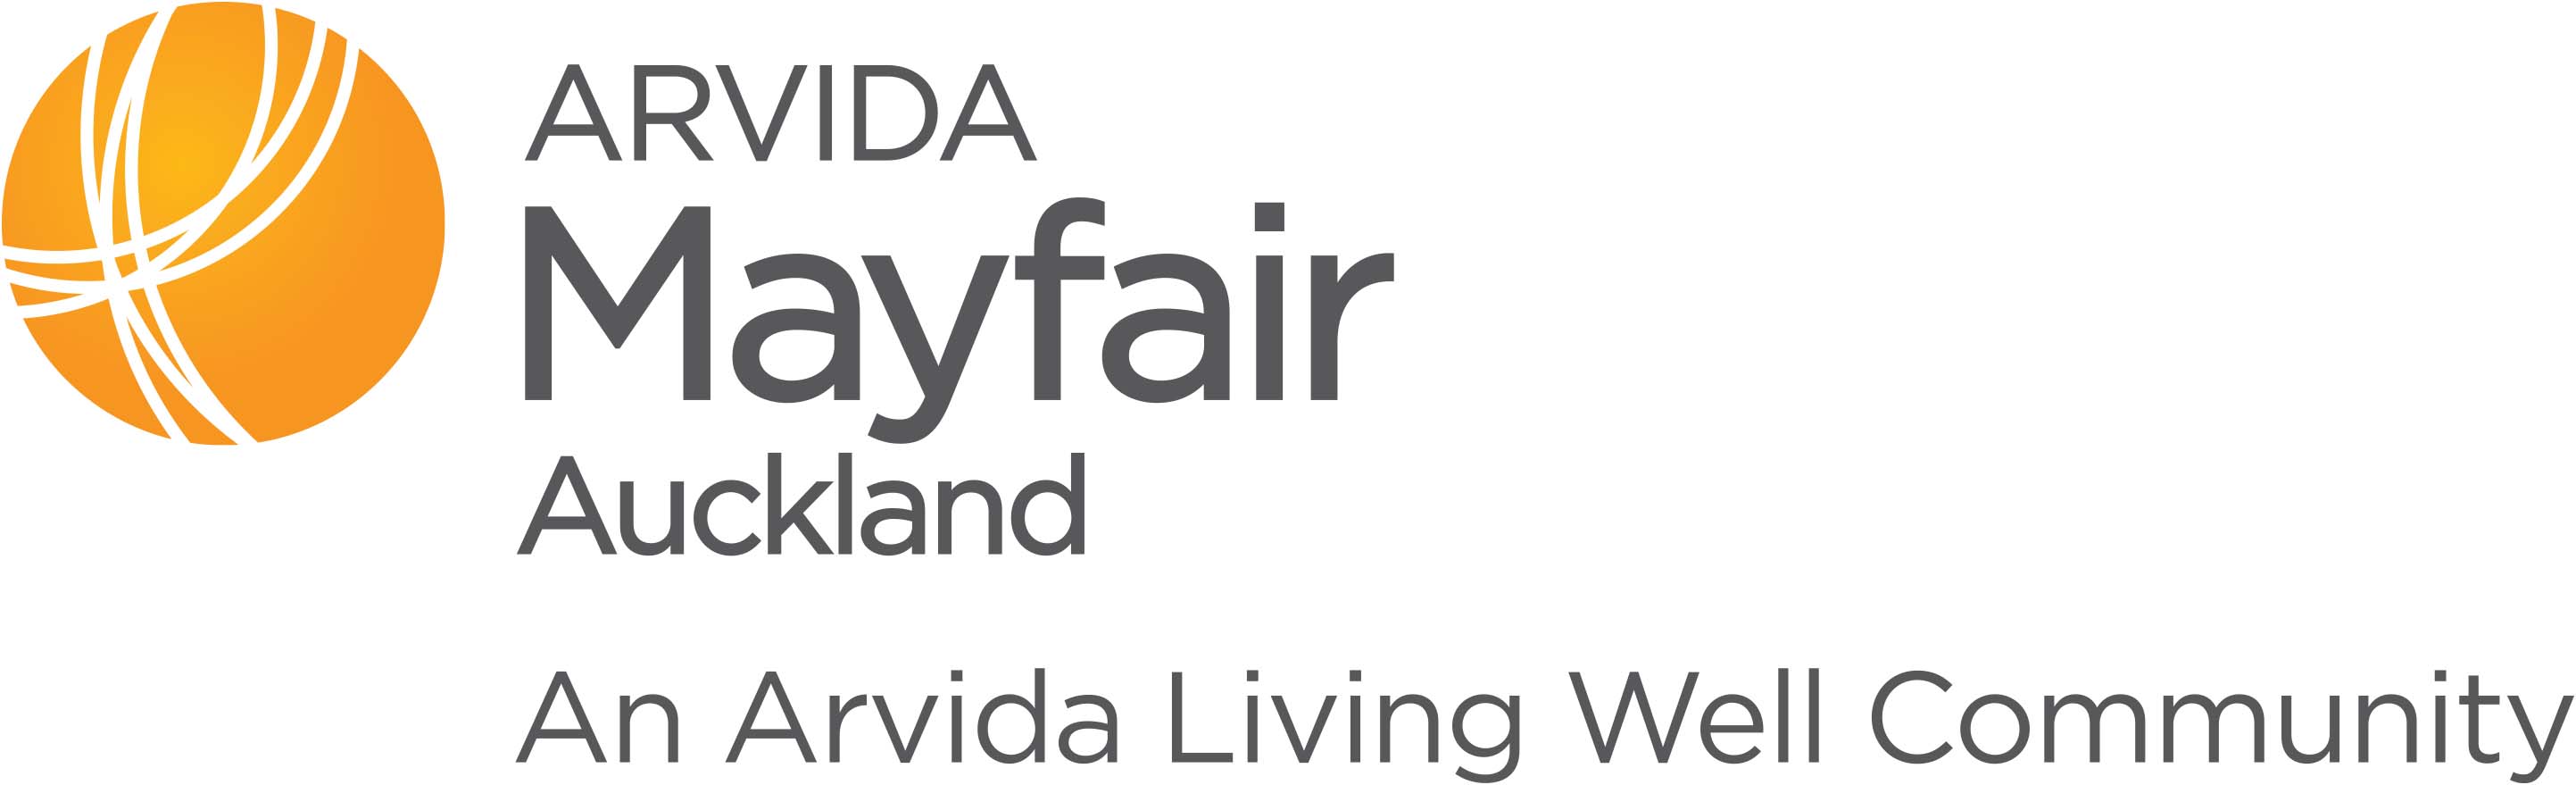 Mayfair Auckland | Arvida logo